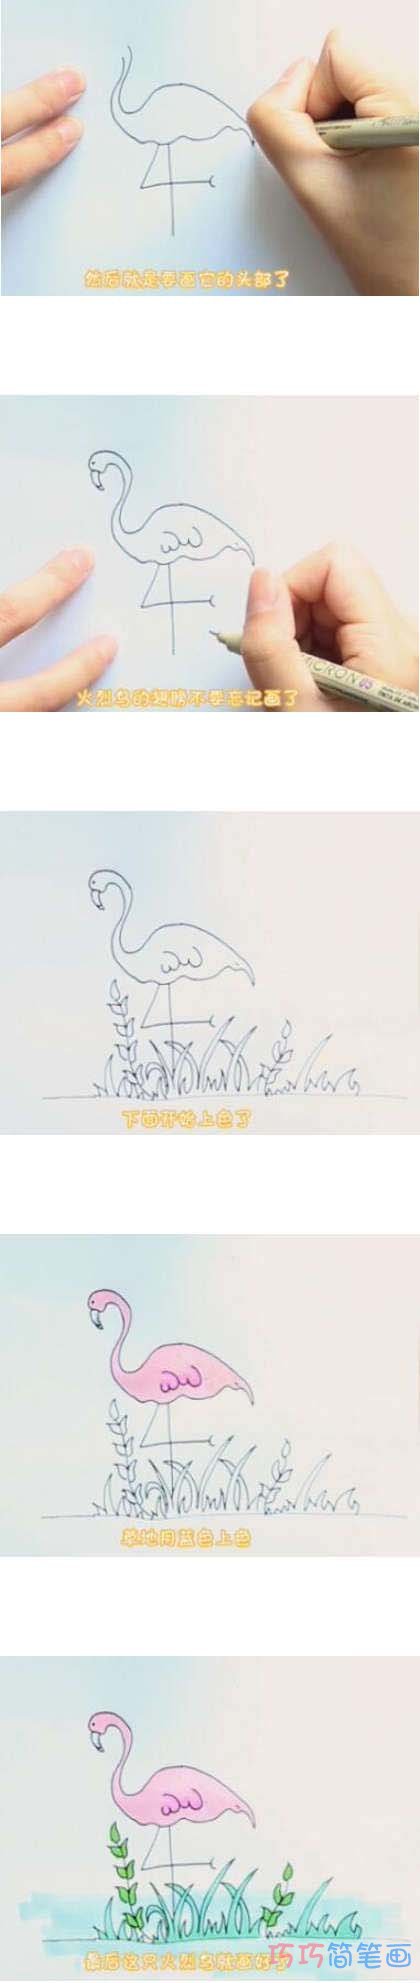 教你怎么画火烈鸟简笔画步骤教程涂色